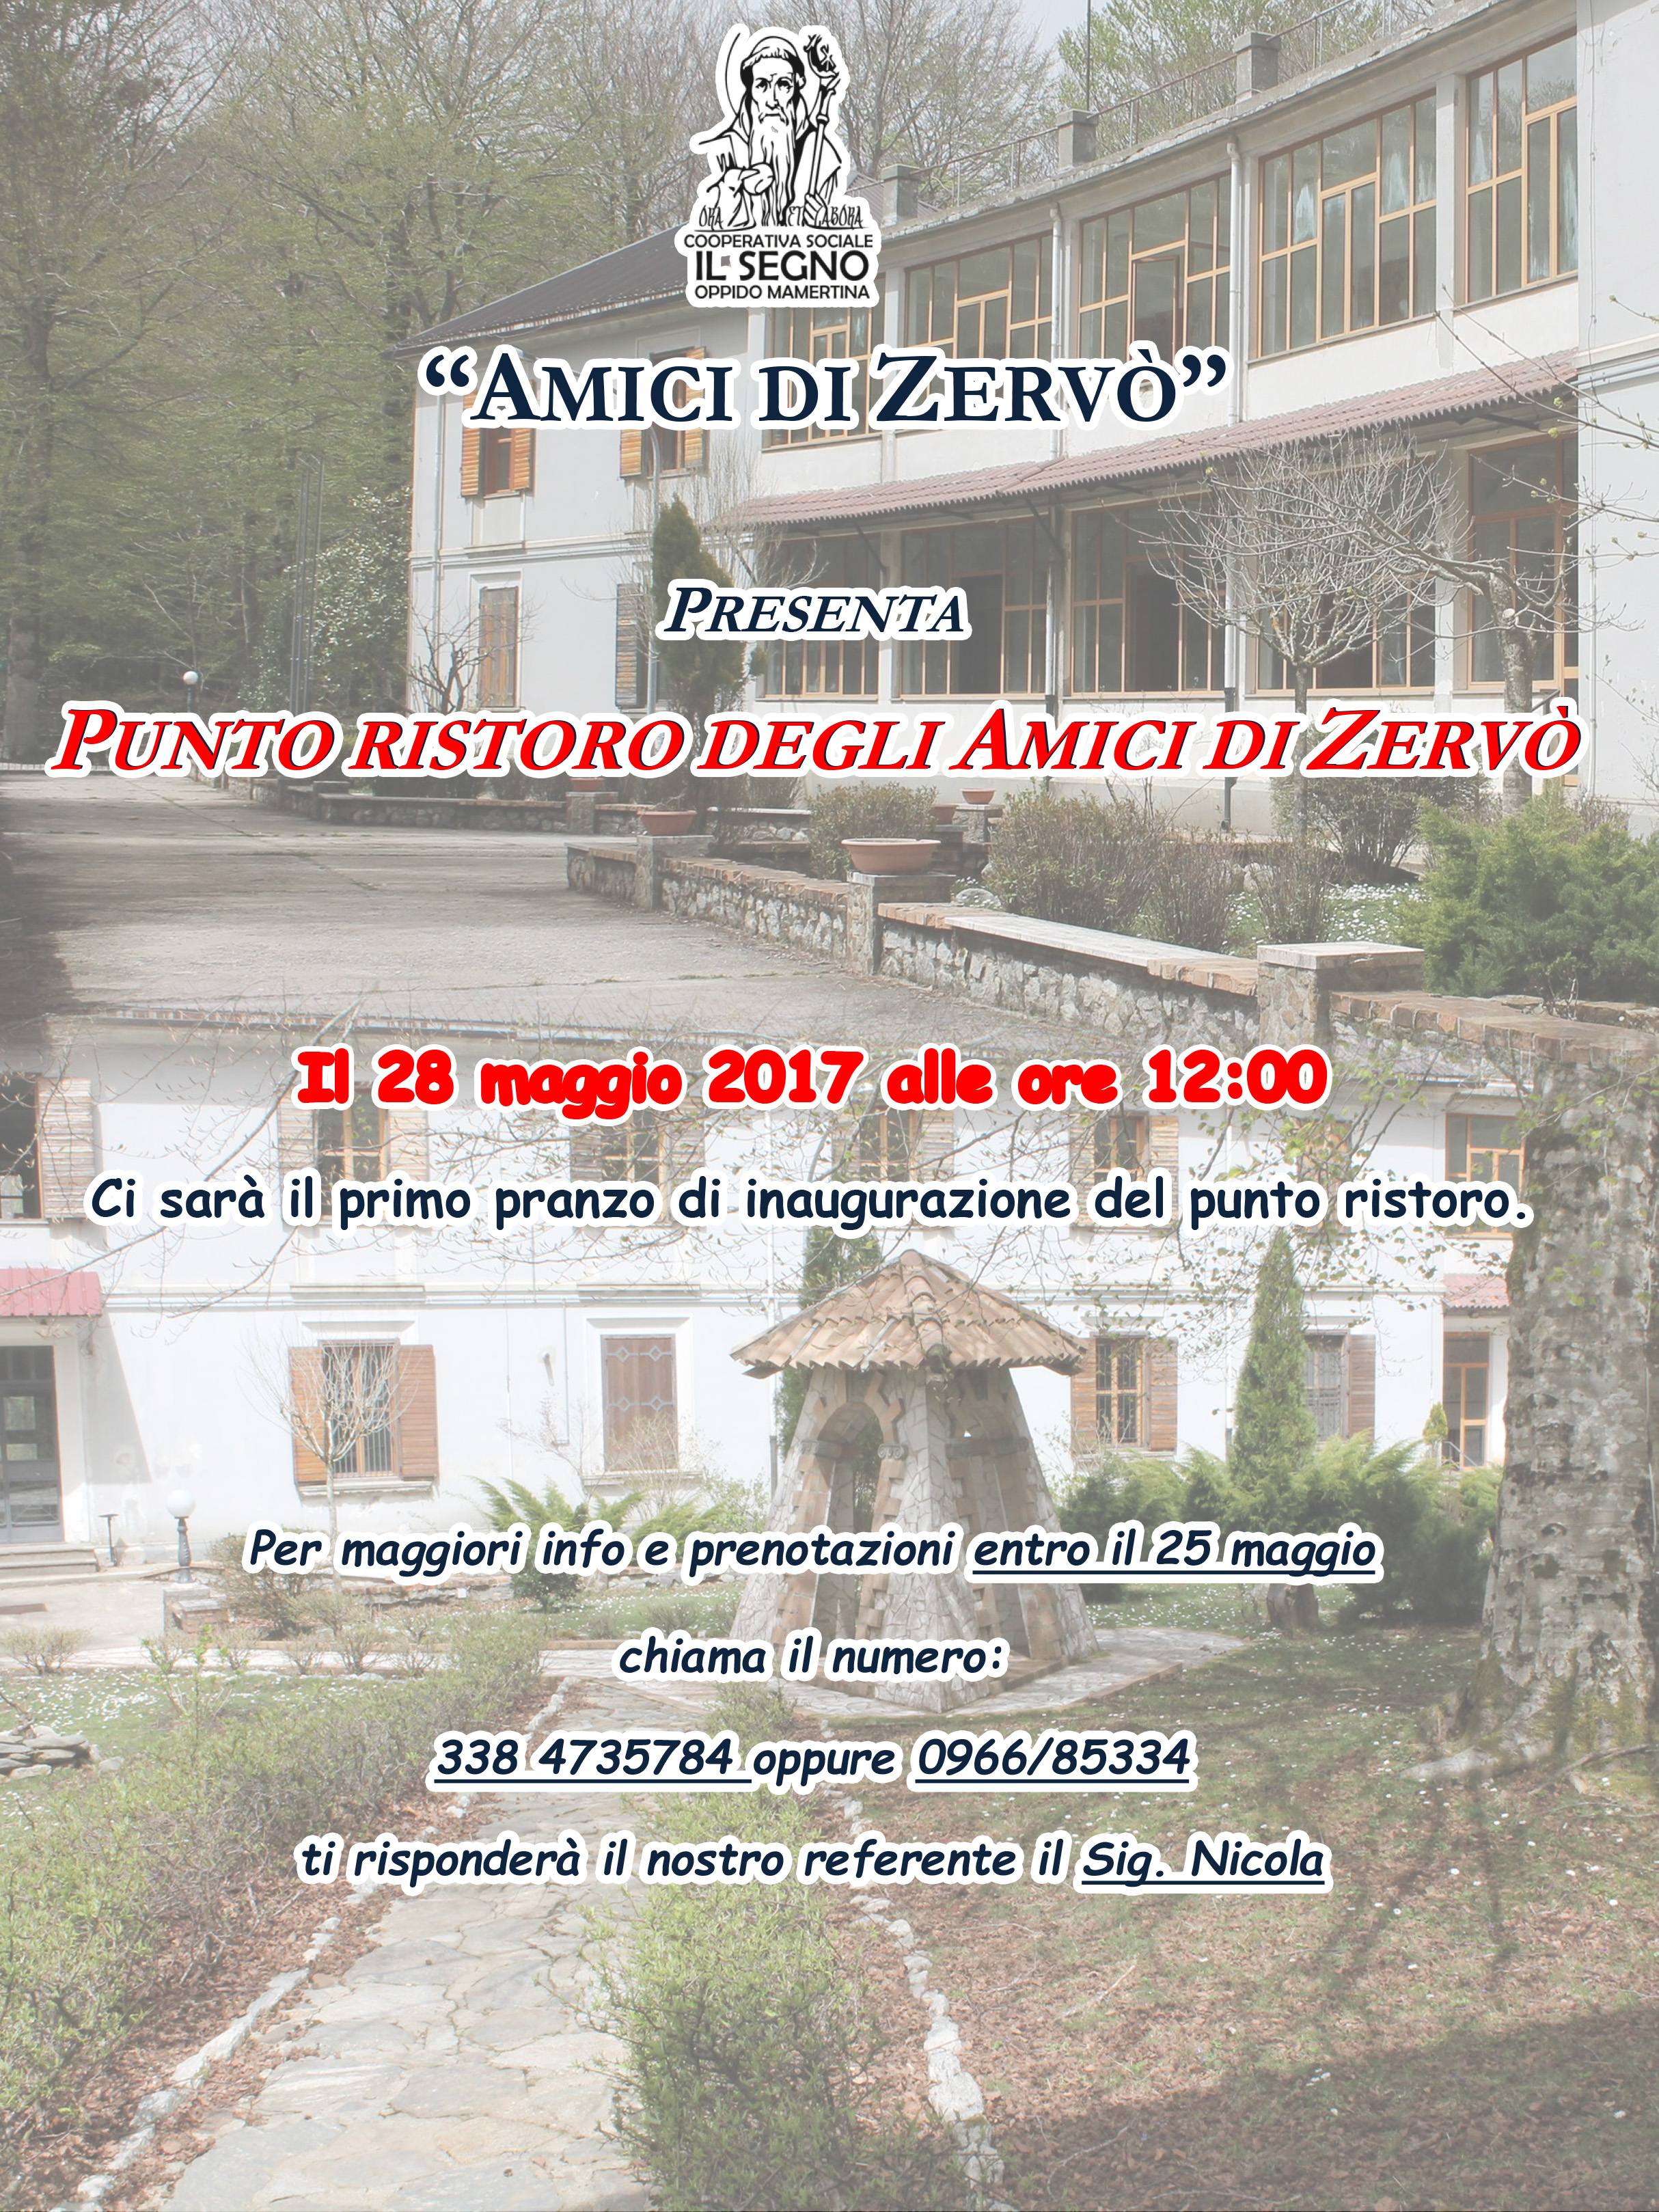 "AMICI DI ZERVO'" Presenta Punto Ristoro degli Amici di Zervò - 28 mmaggio 2017 ore 12:00